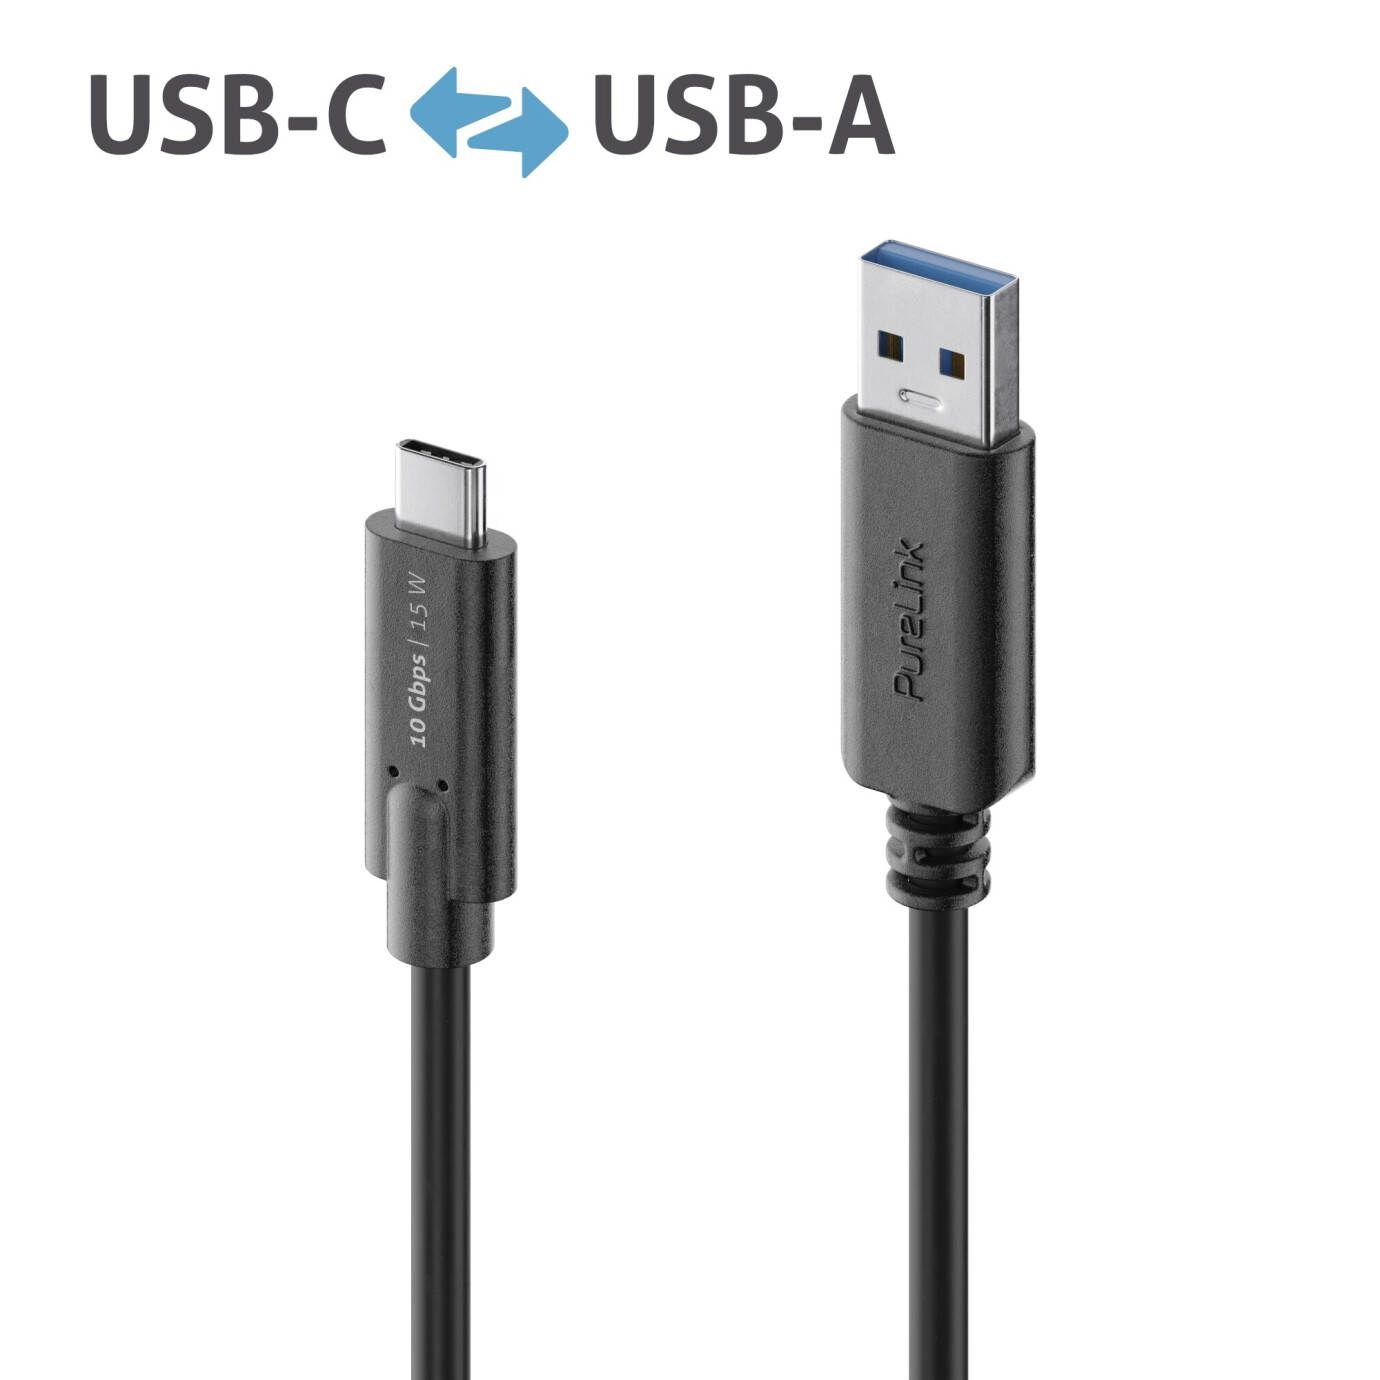 Purelink IS2611-005 USB-C auf USB-A (Gen 2) Kabel 0,5m schwarz